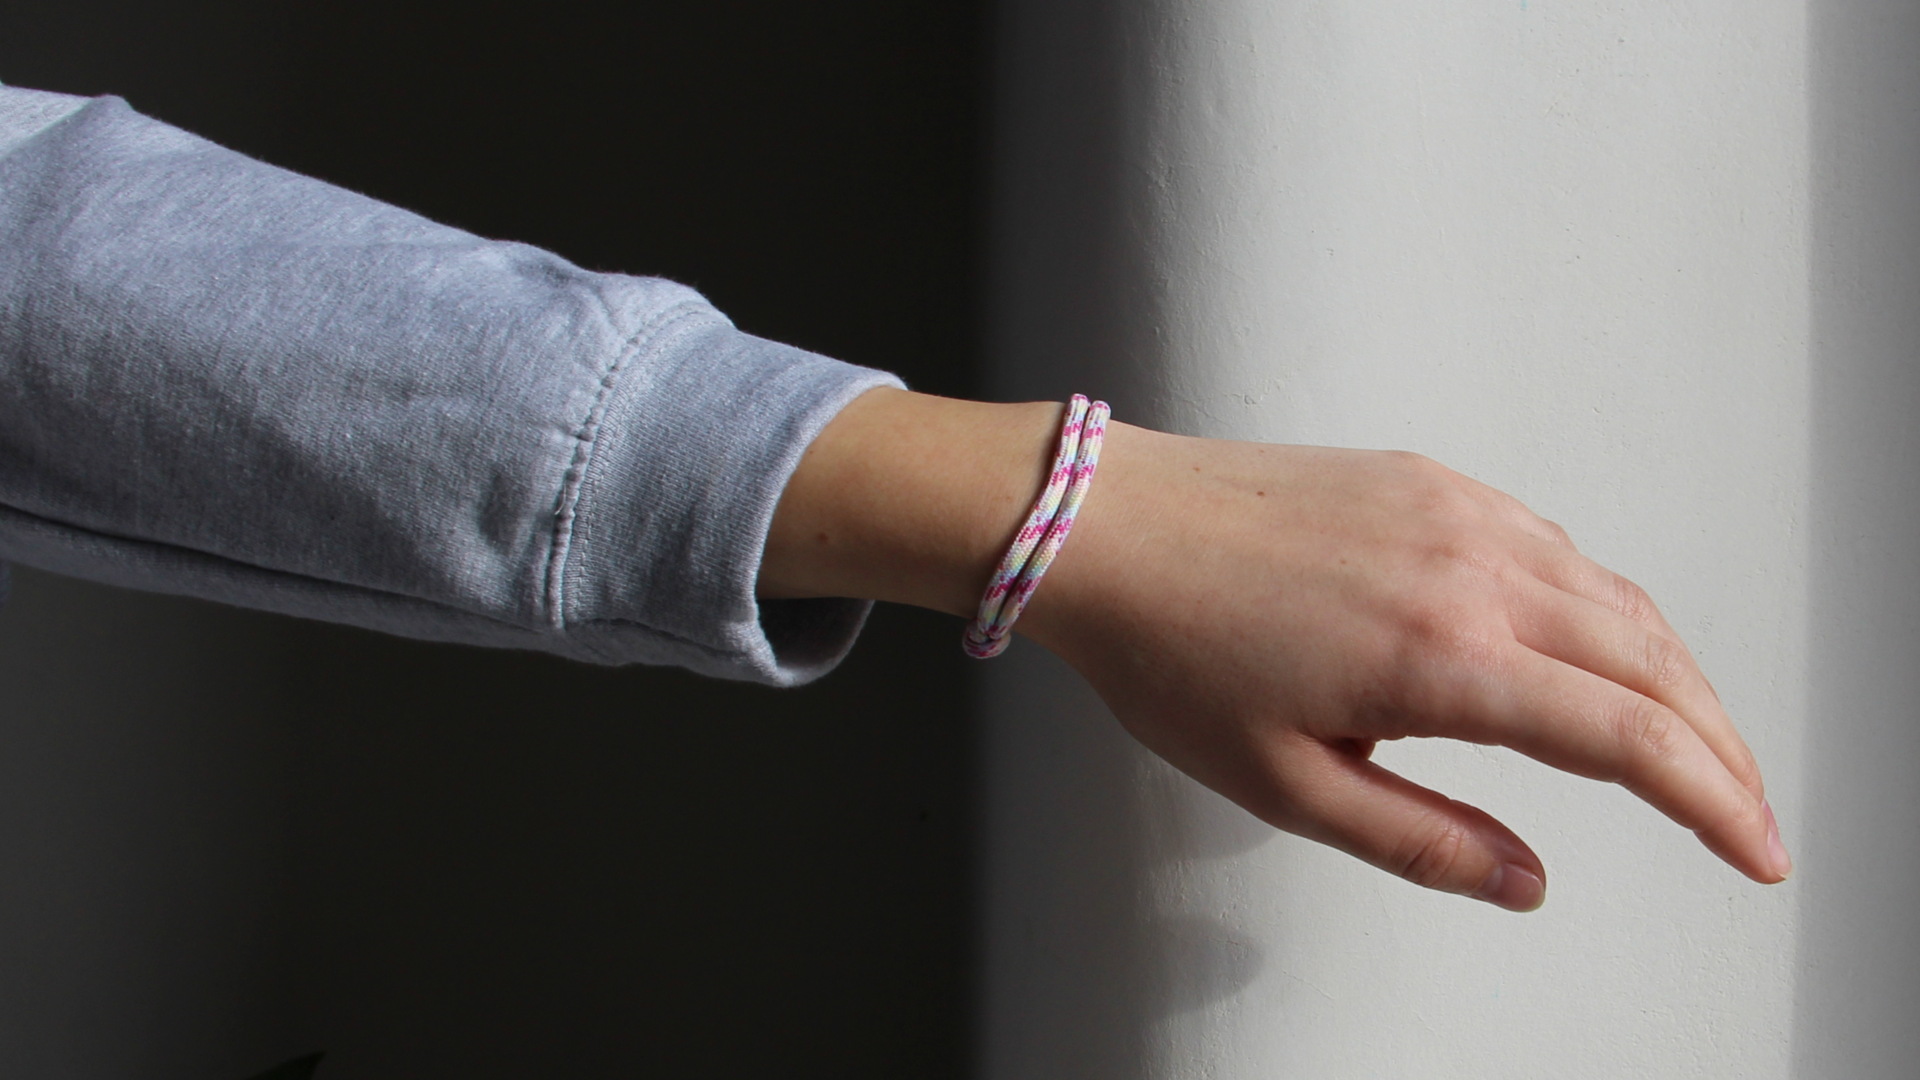 Pink Ribbon bracelet